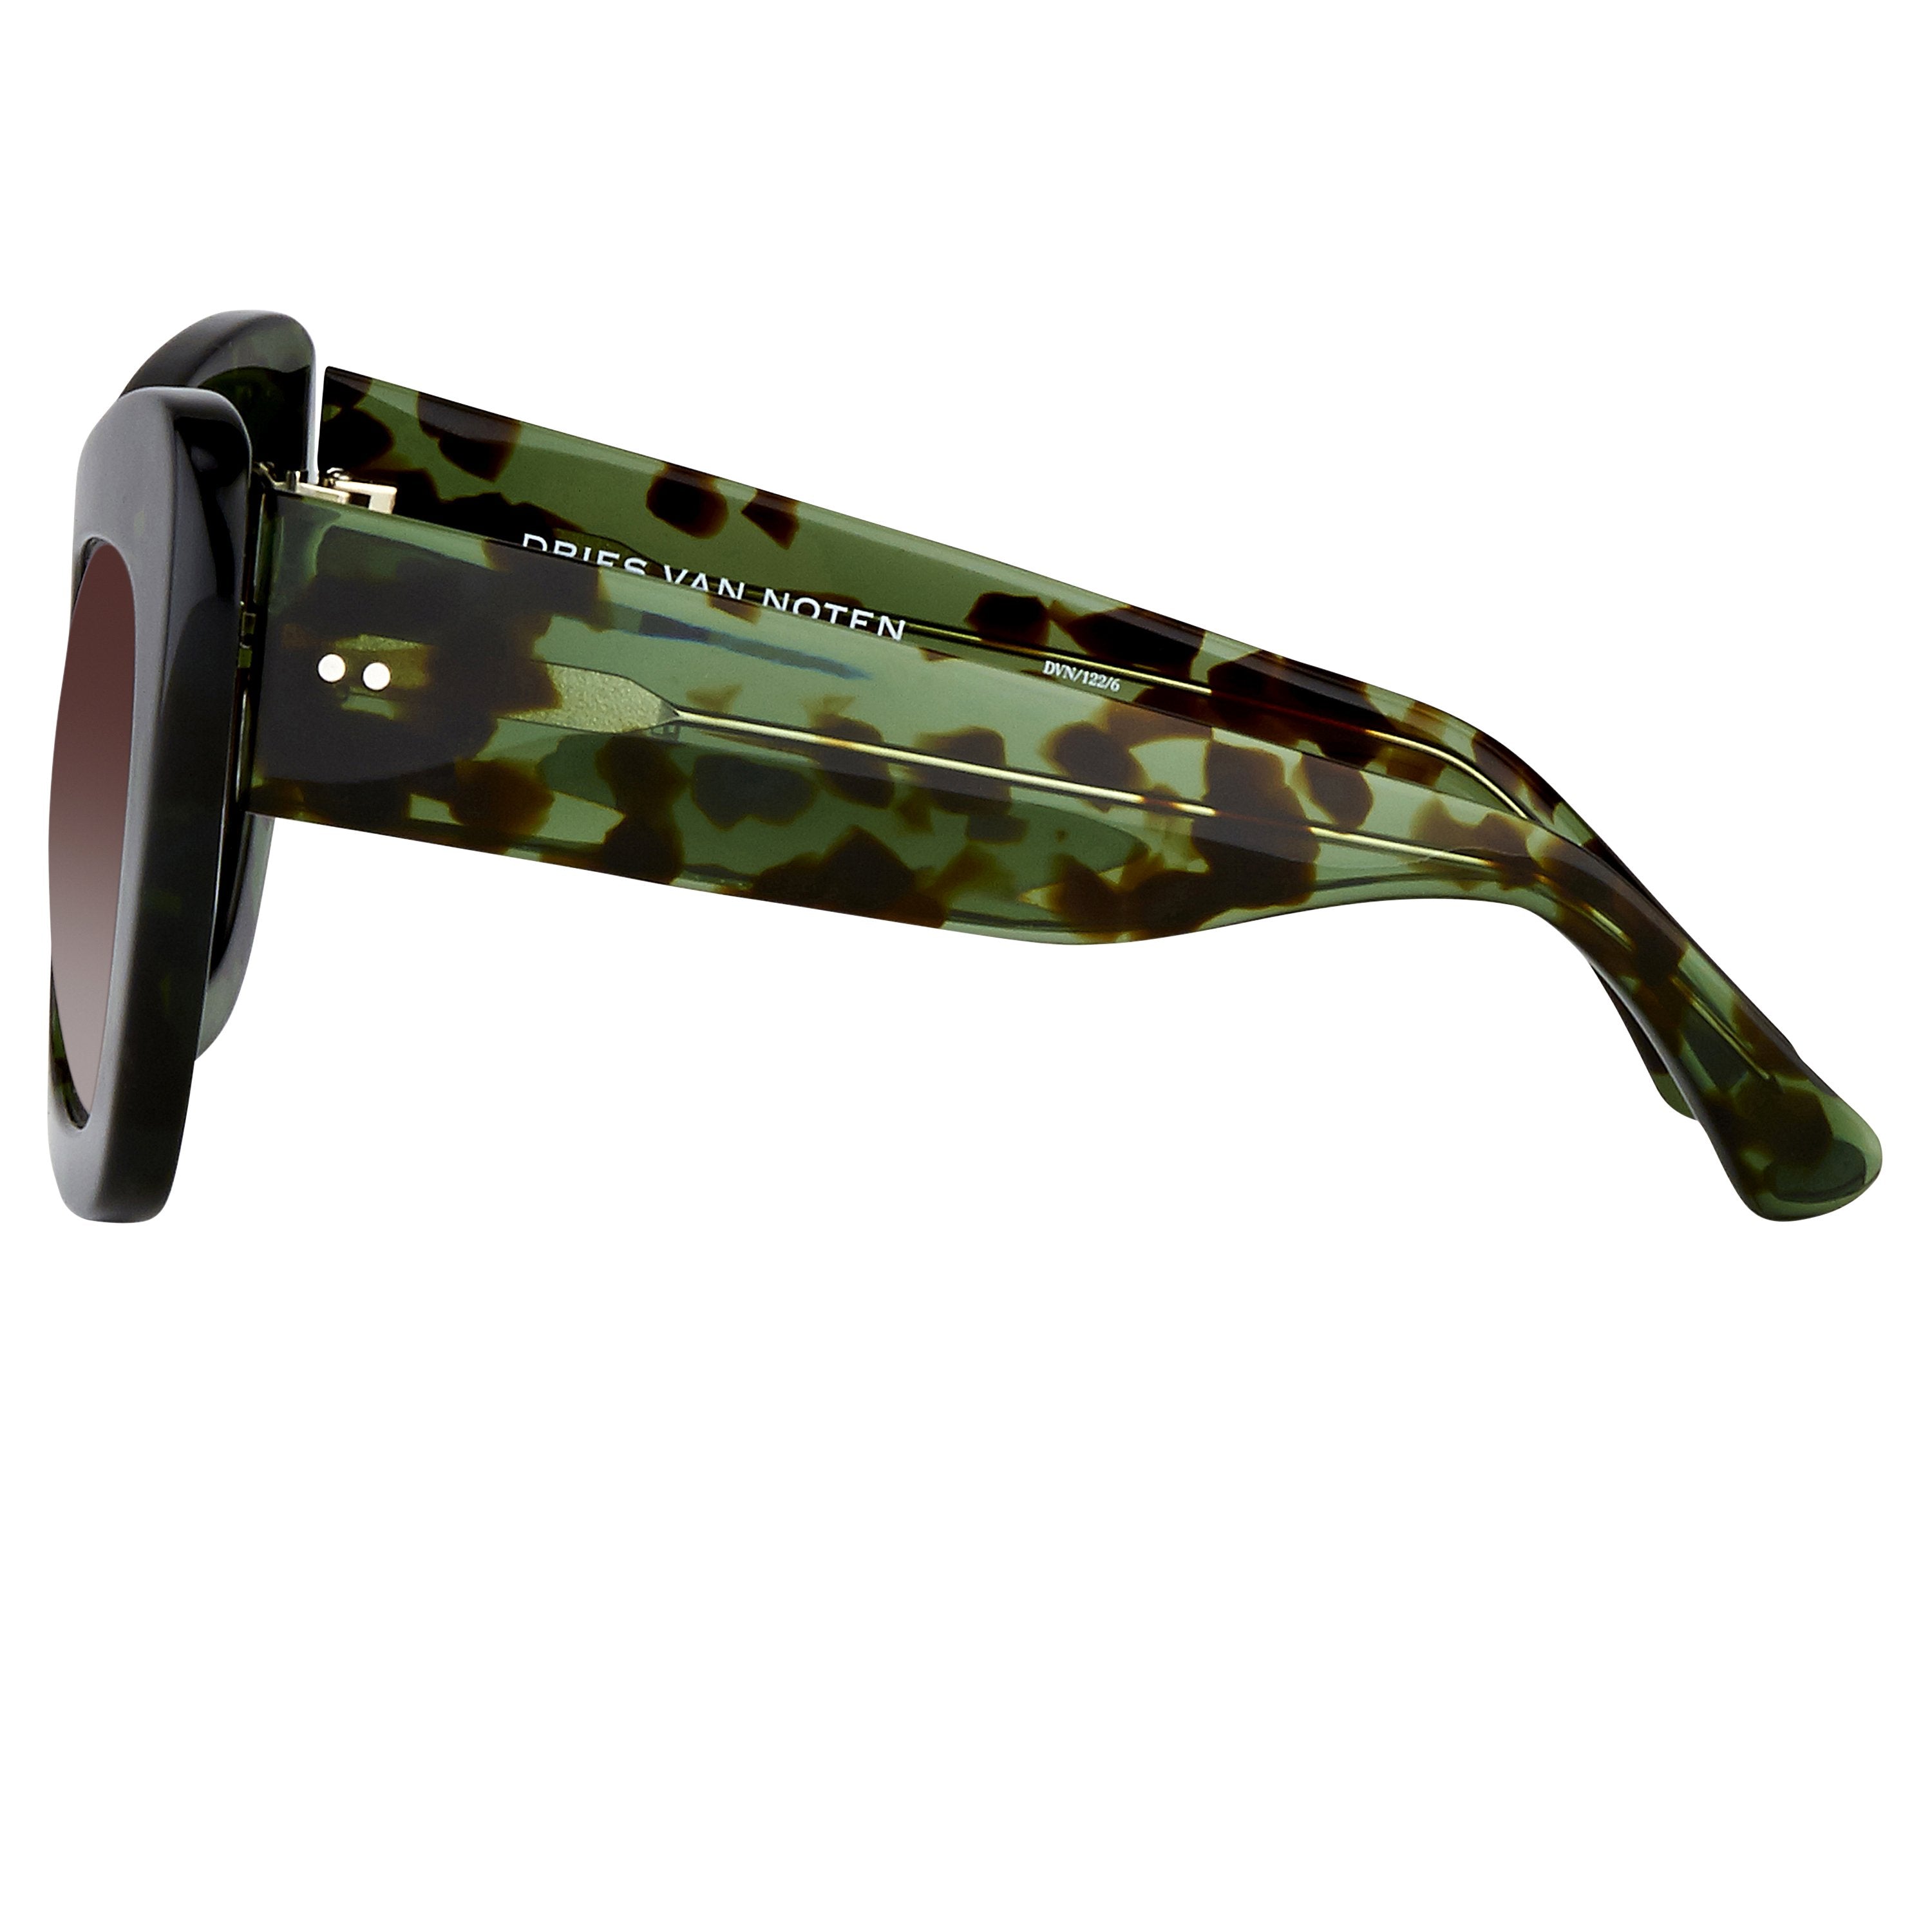 Color_DVN122C6SUN - Dries van Noten 122 C6 Oversized Sunglasses